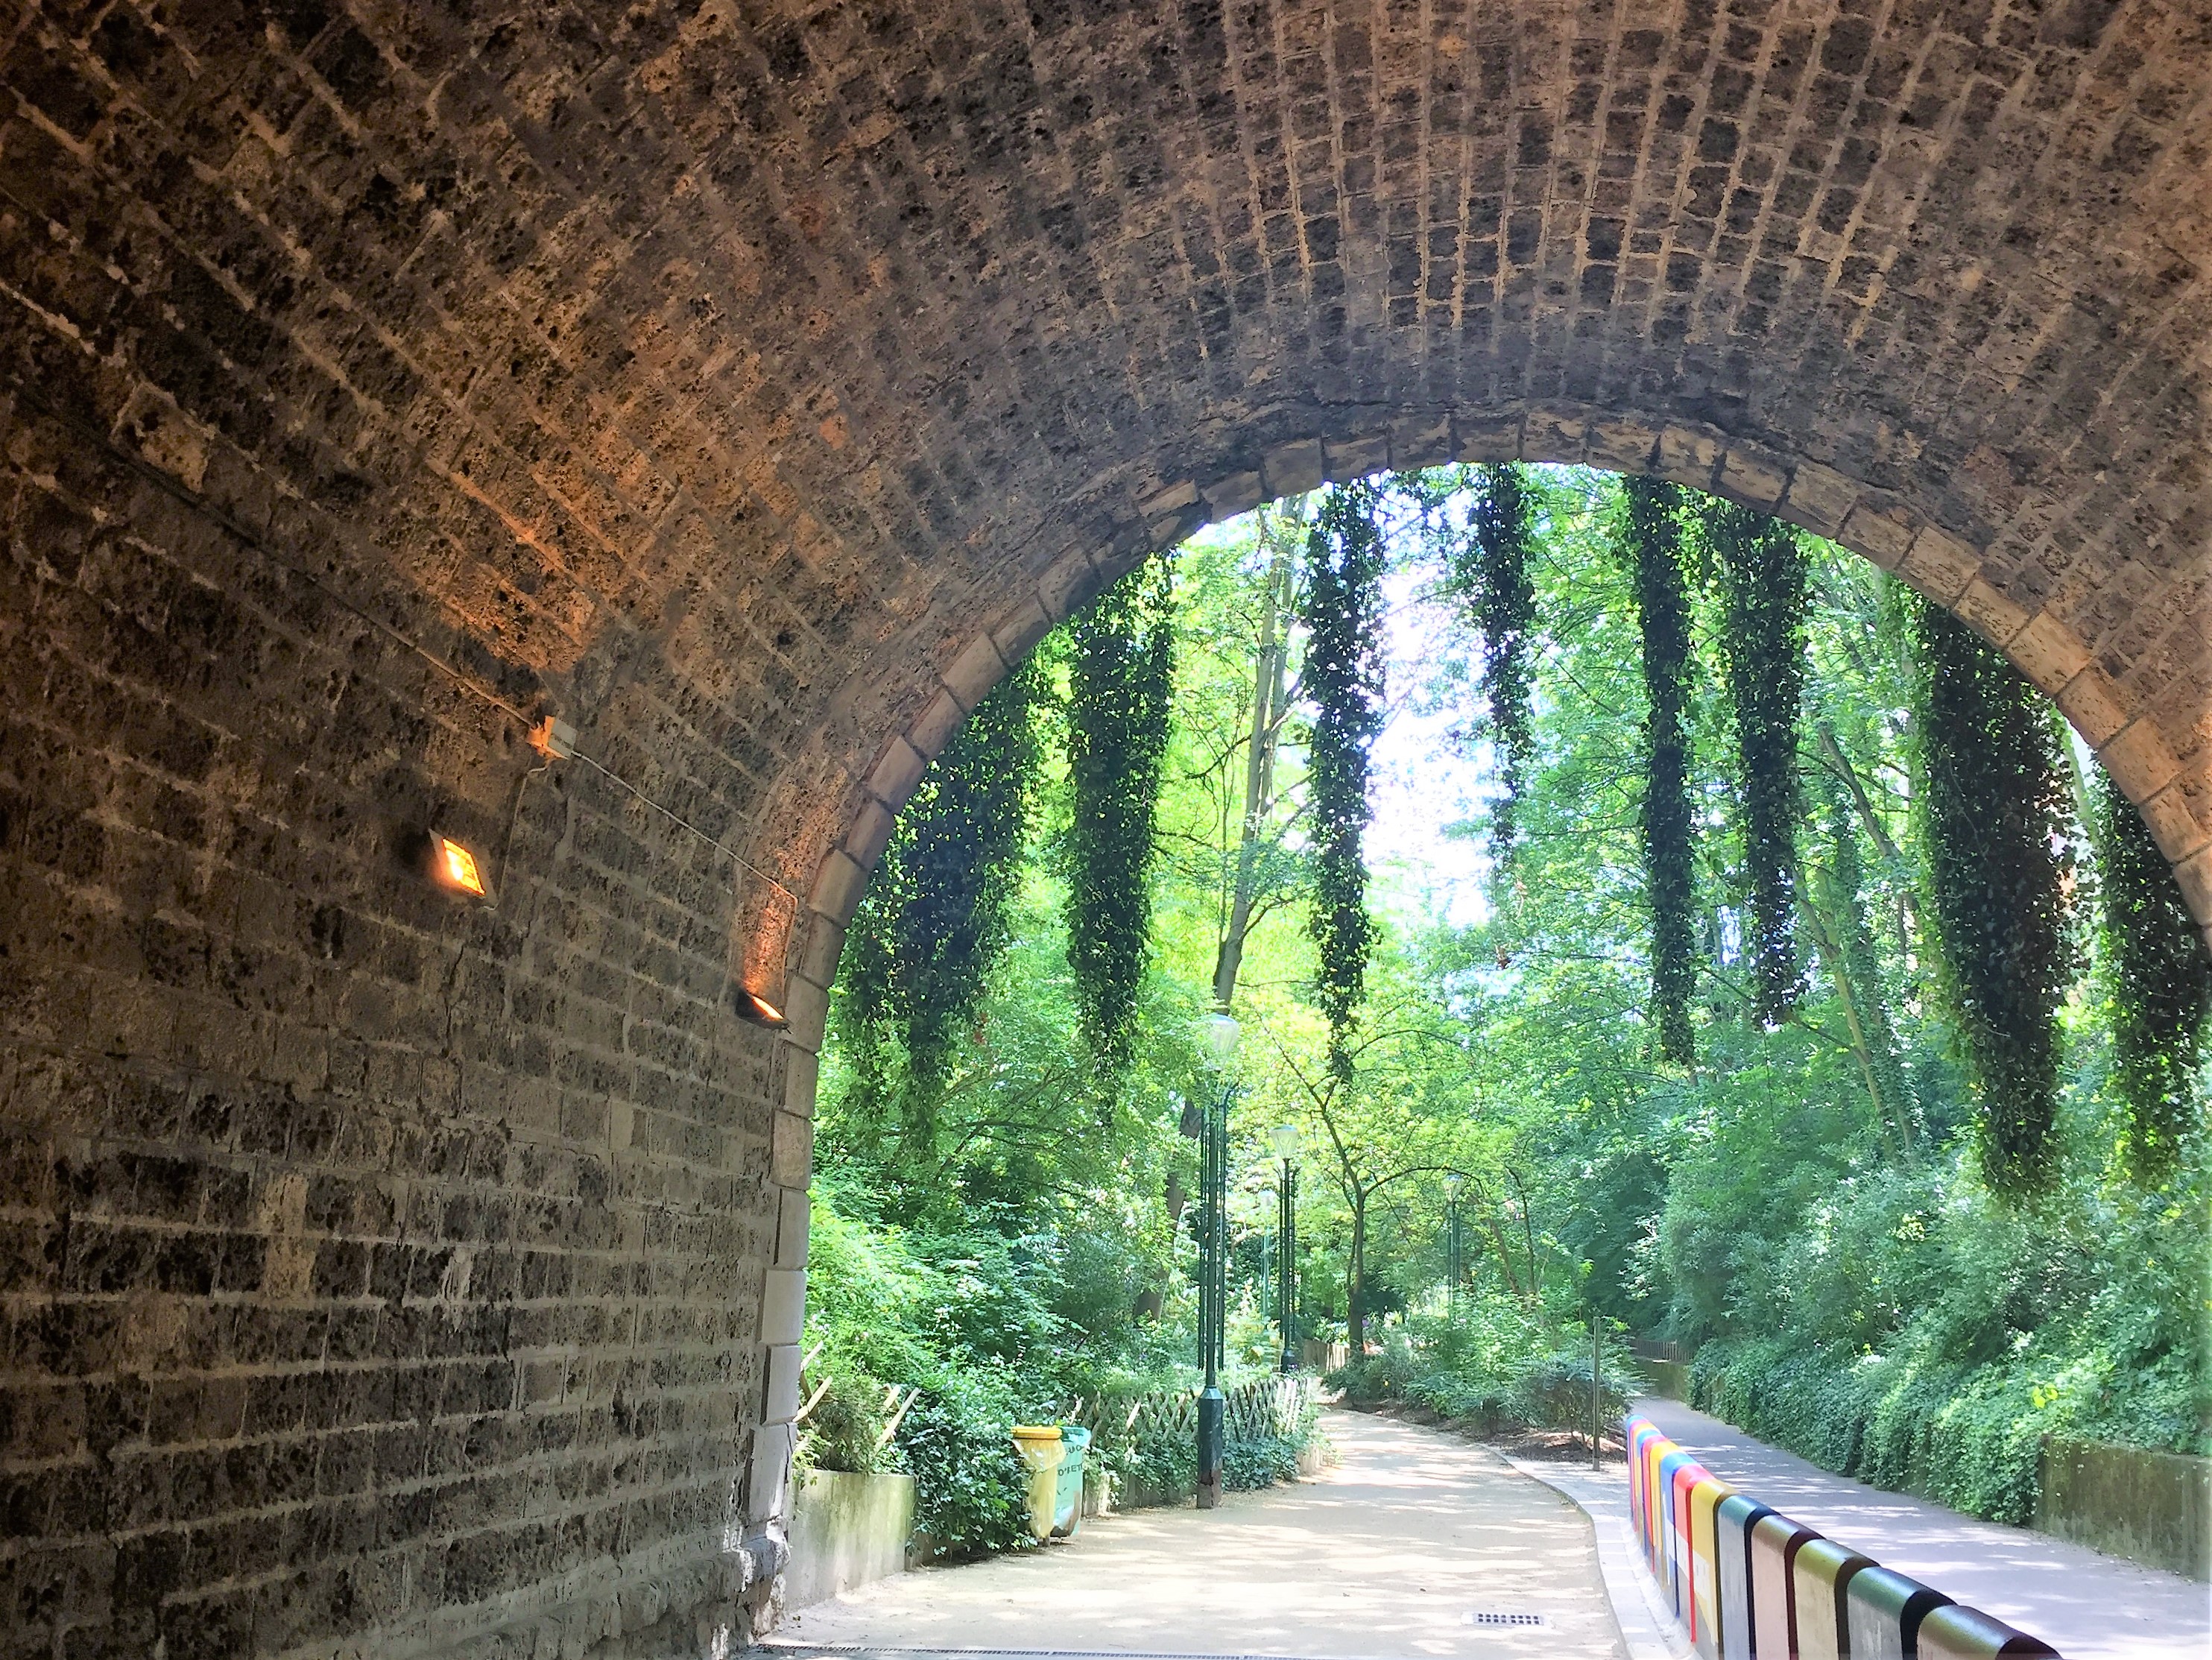 プロムナード・プランテのトンネルの中から見た風景